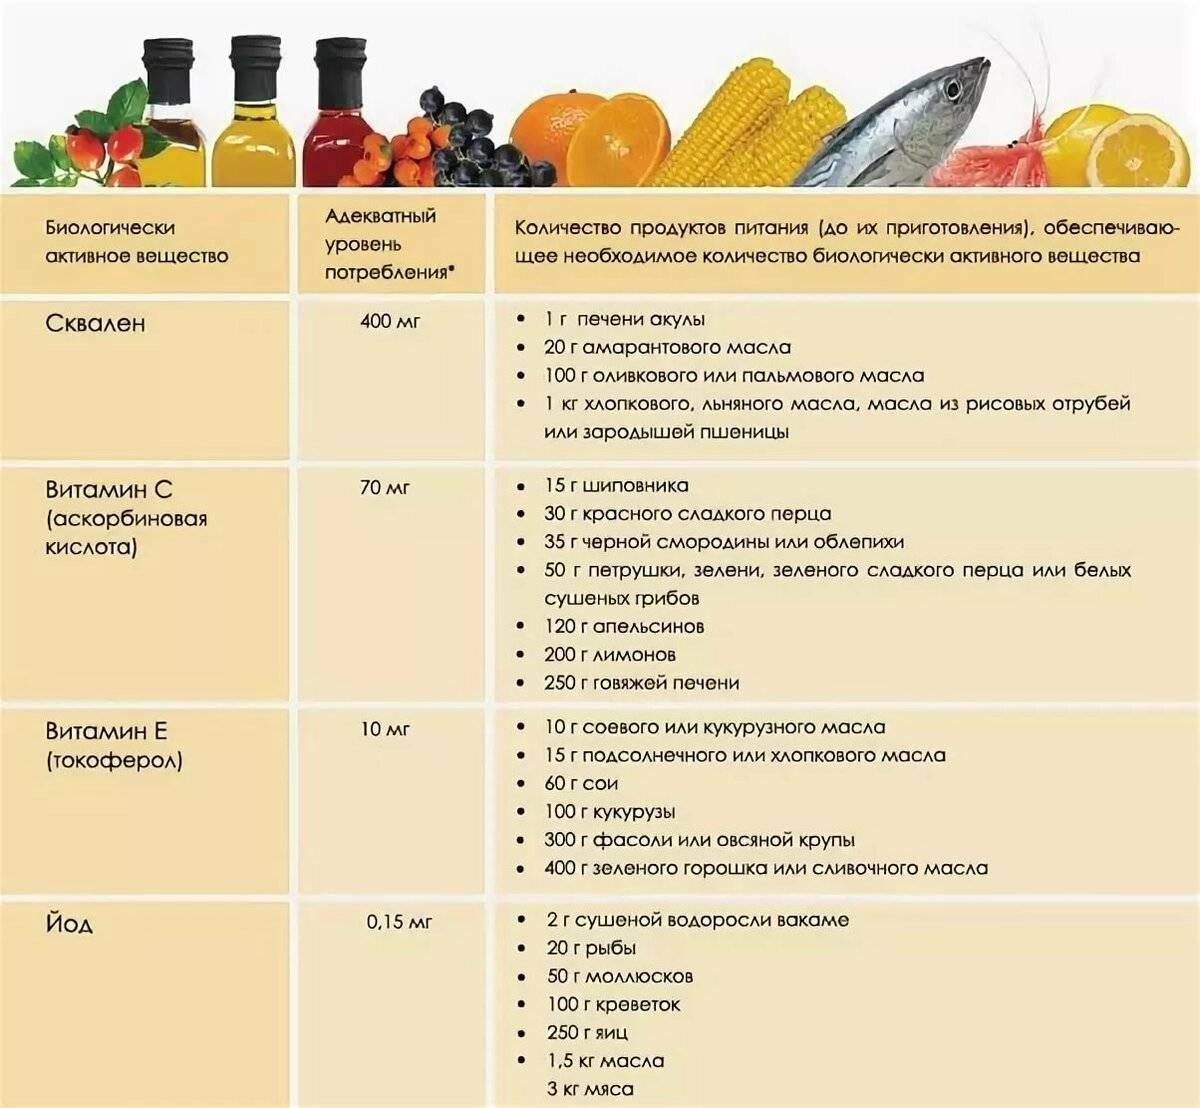 Таблица содержания питания. Таблица содержания полезных веществ в продуктах питания. Витамины и микроэлементы в продуктах питания таблица. Витамины и минералы в продуктах таблица. Таблица продуктов с содержанием витаминов и минералов.